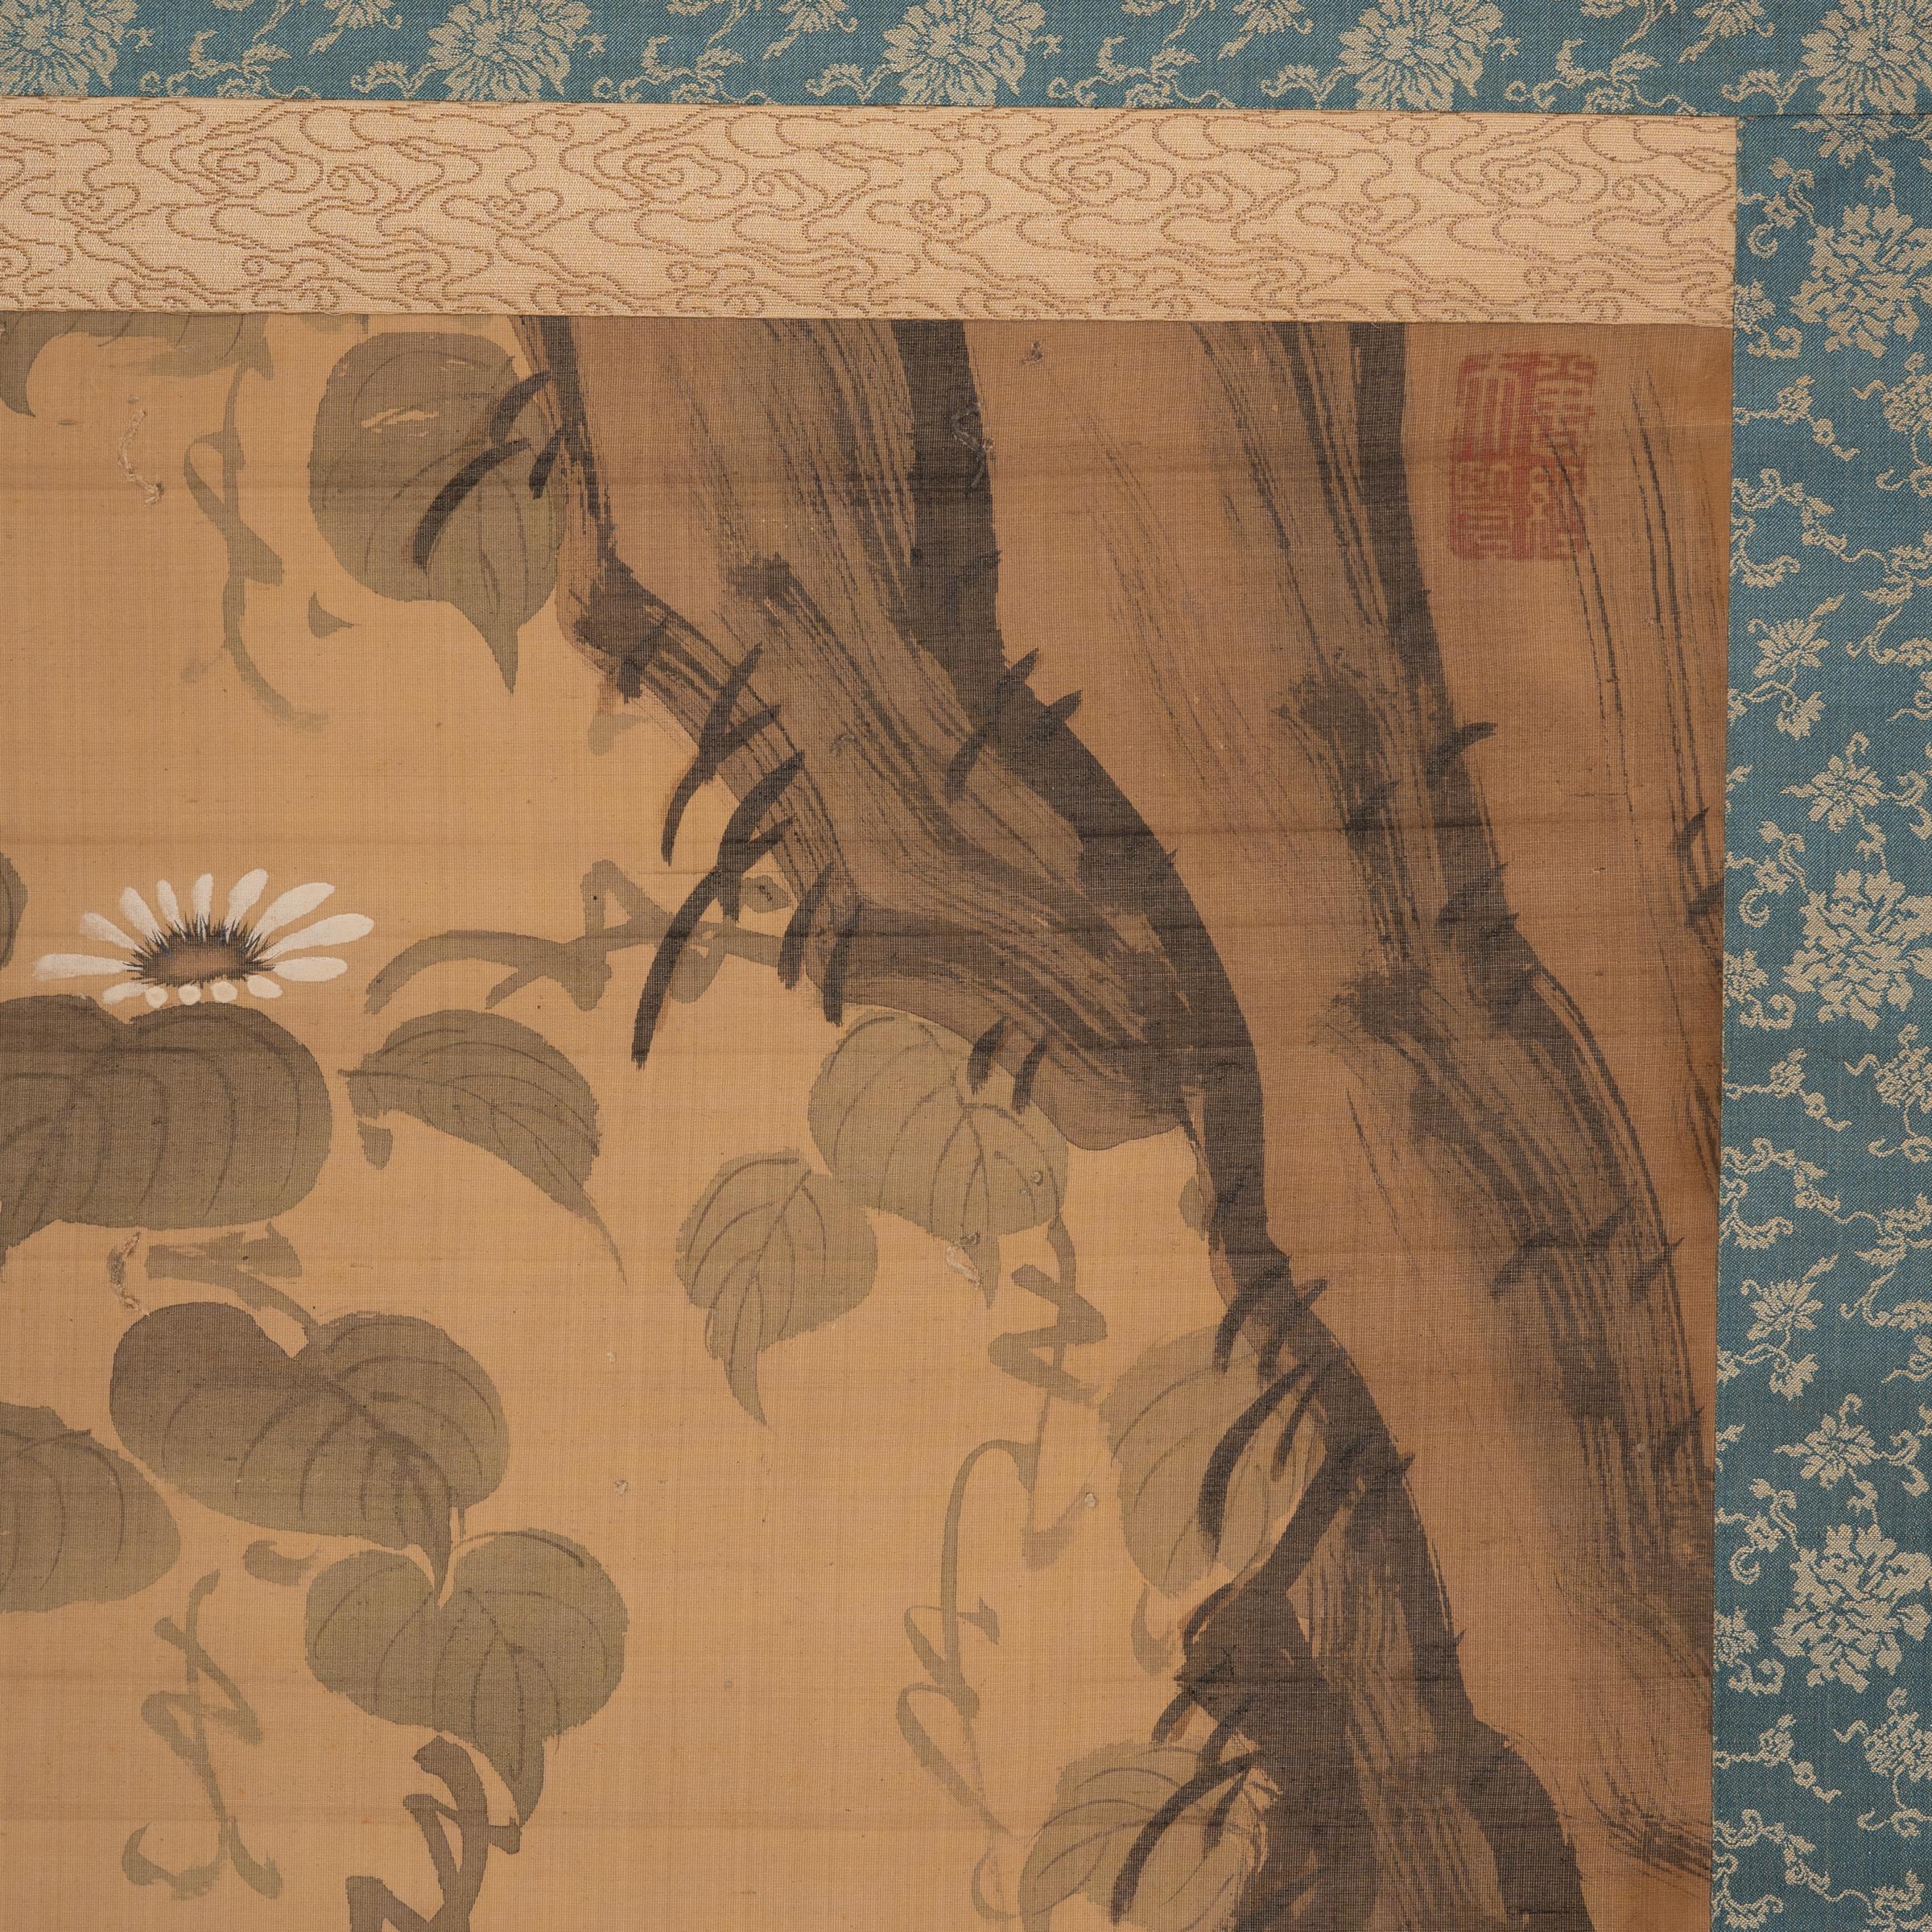 Obwohl die westliche Malerei während der Meiji-Zeit (1868-1912) in Japan Einzug hielt, kam es zu einer Wiederbelebung traditioneller Malstile, als die Künstler versuchten, einen modernen japanischen Stil mit Wurzeln in der Vergangenheit zu schaffen.